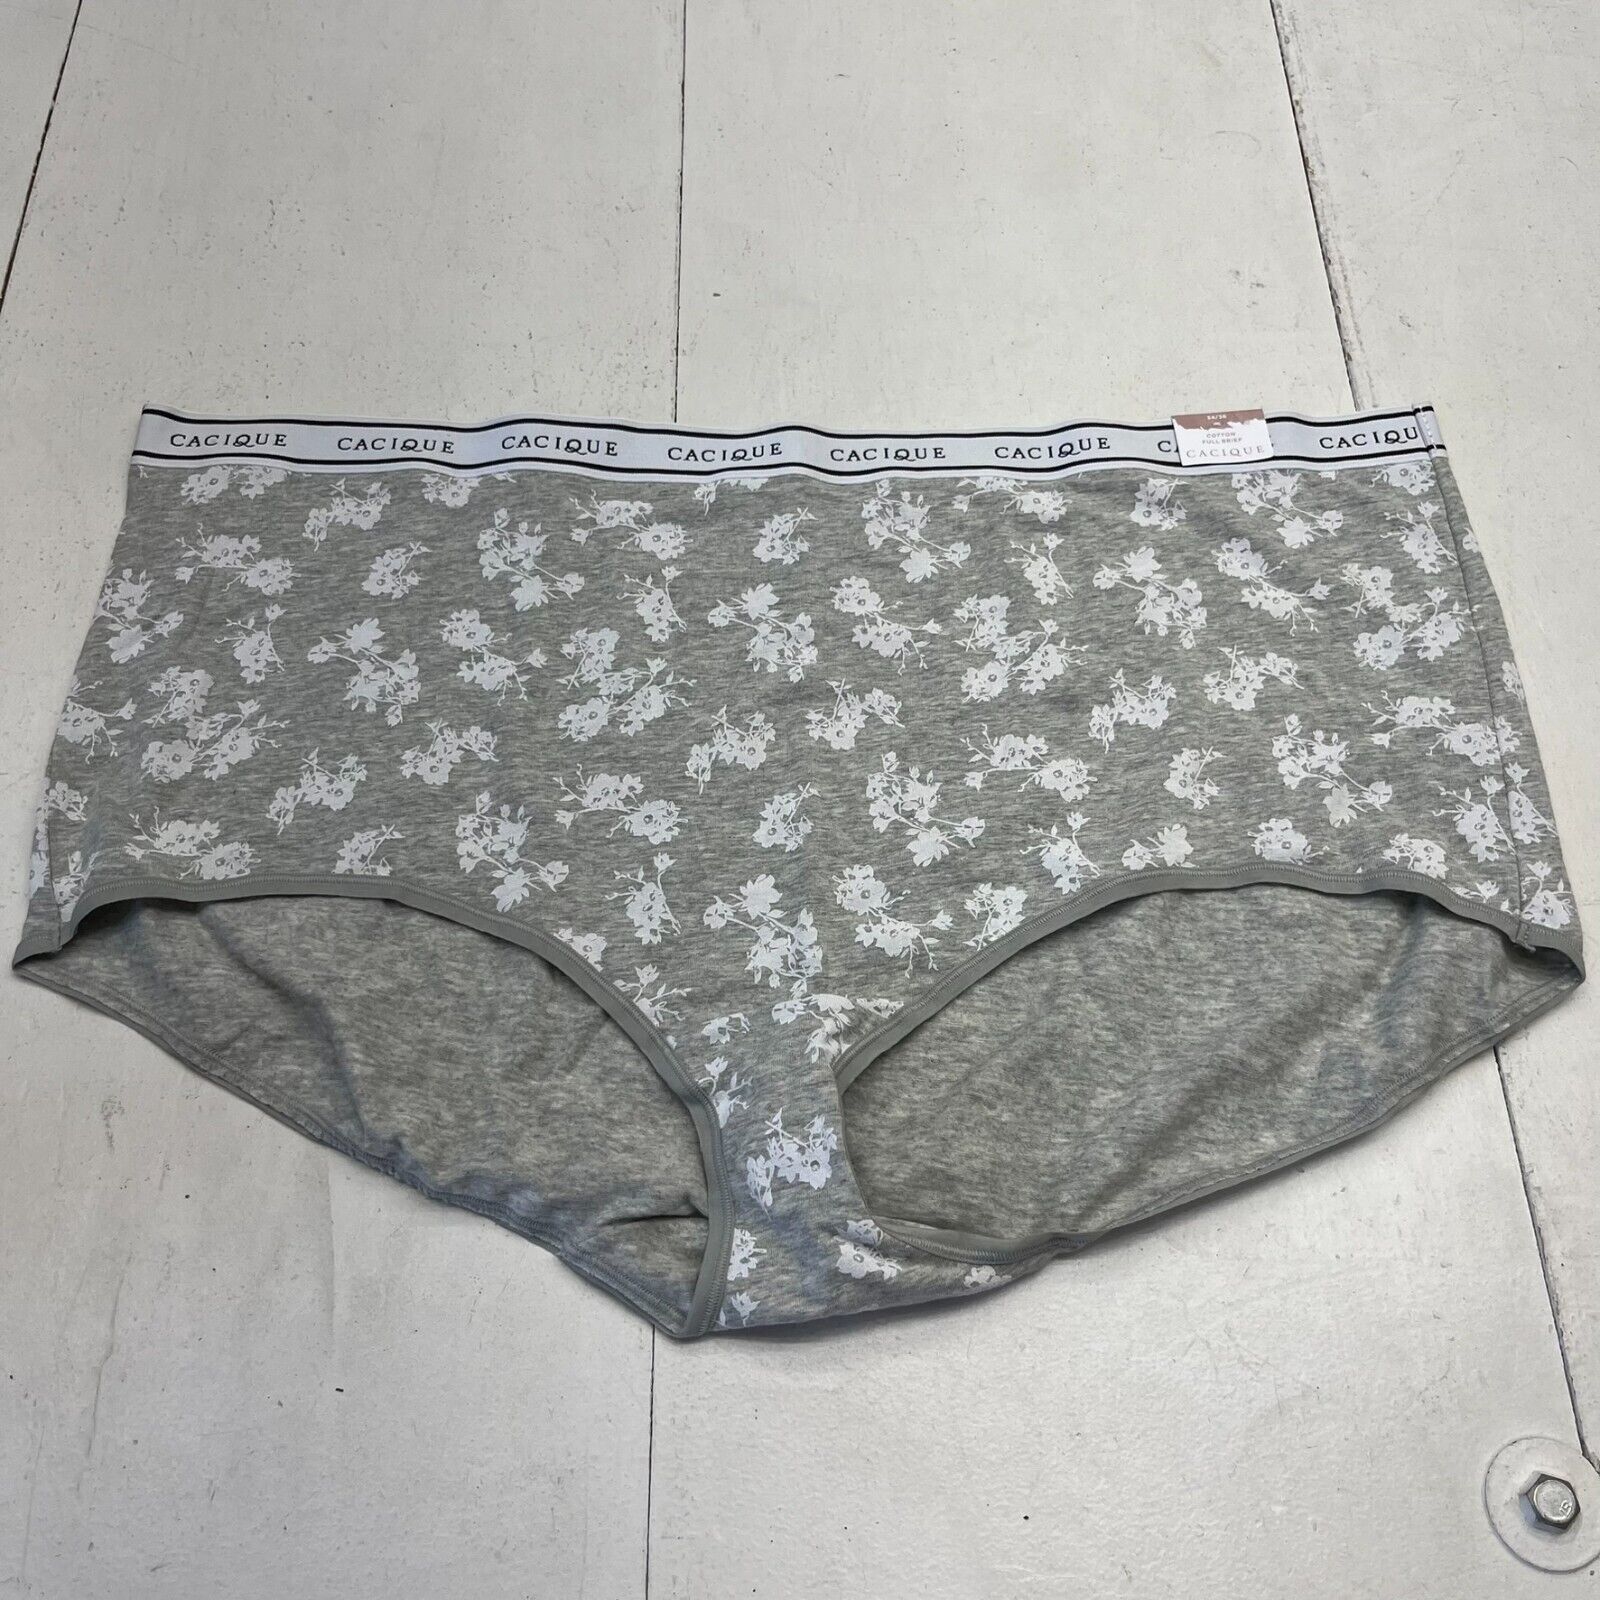 Neiwai Black Seamless Brief Underwear Women’s Size M/L New